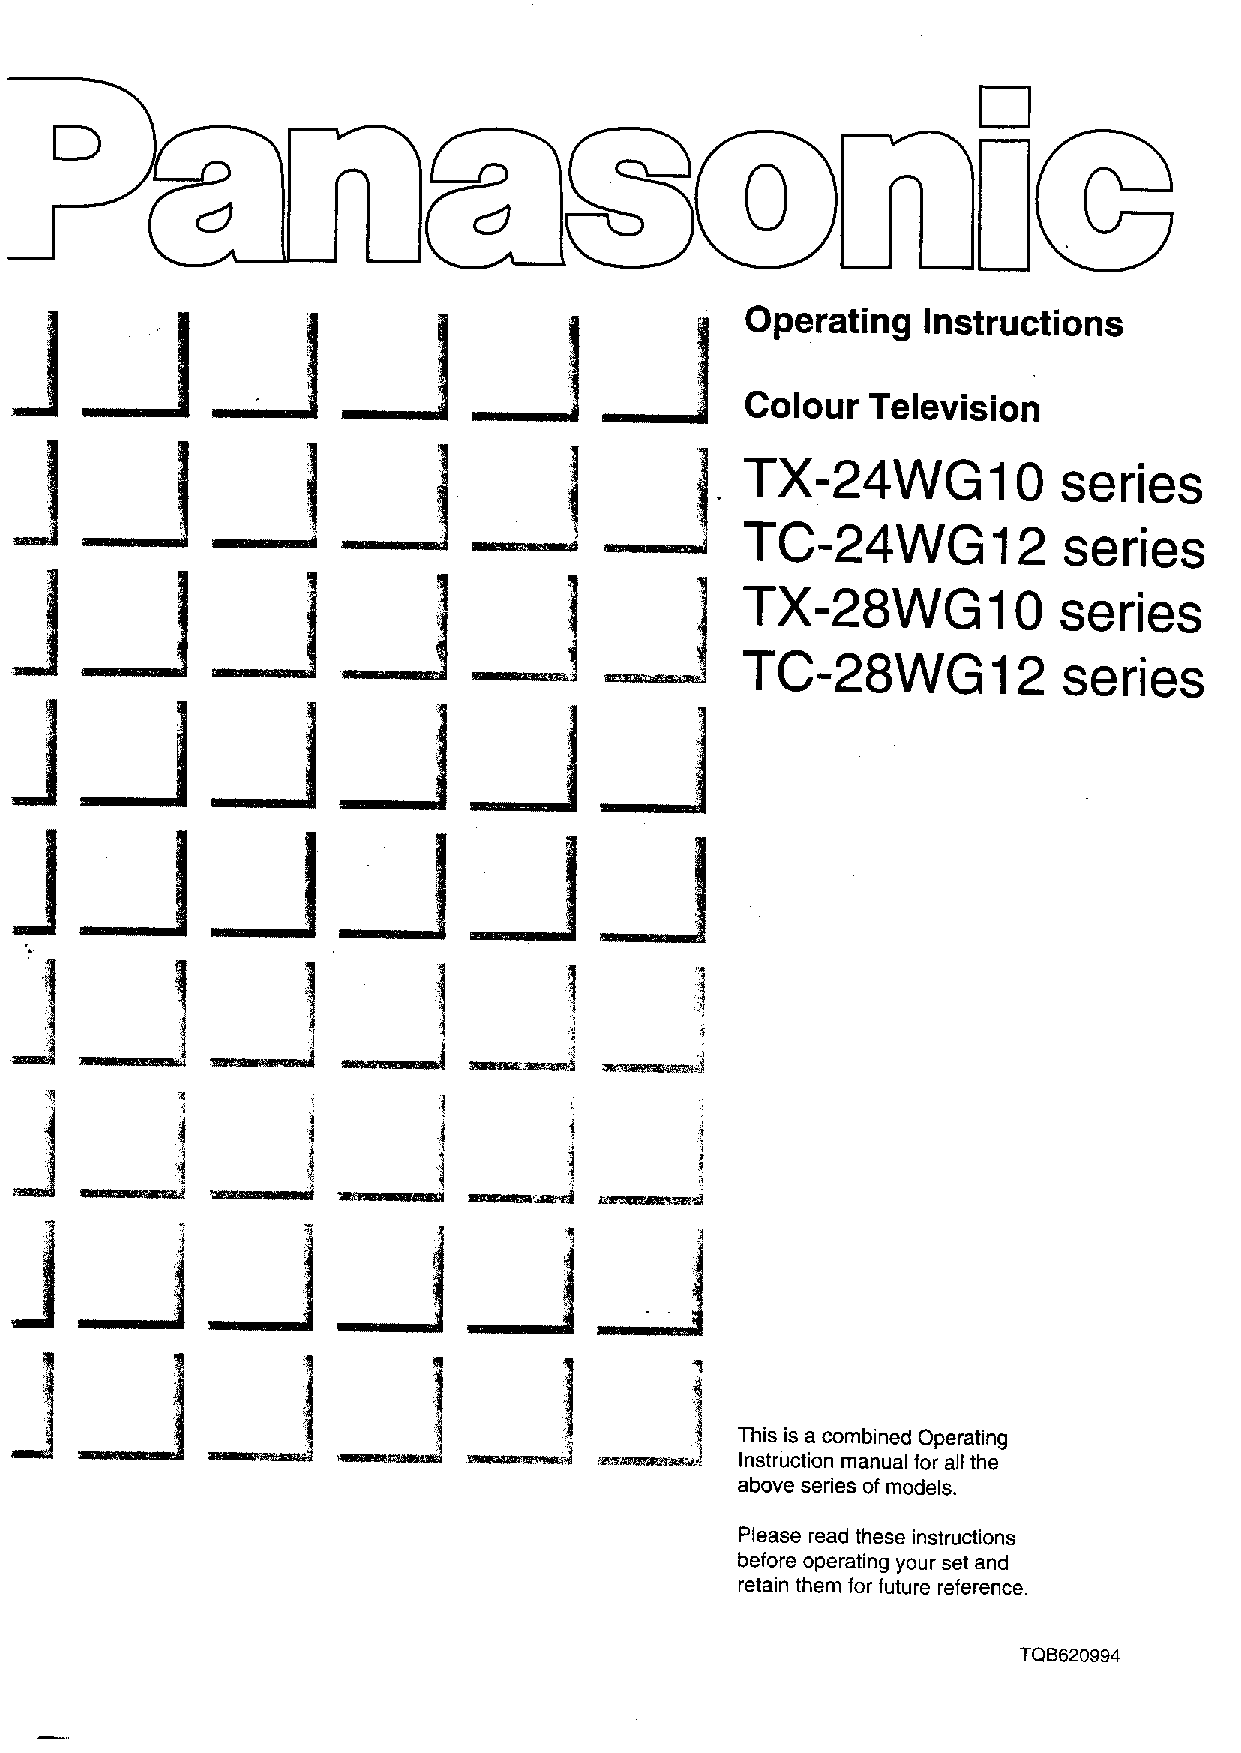 Panasonic TX-28WG10, TX-28WG12, TX-24WG12, TX-24WG10 User Manual